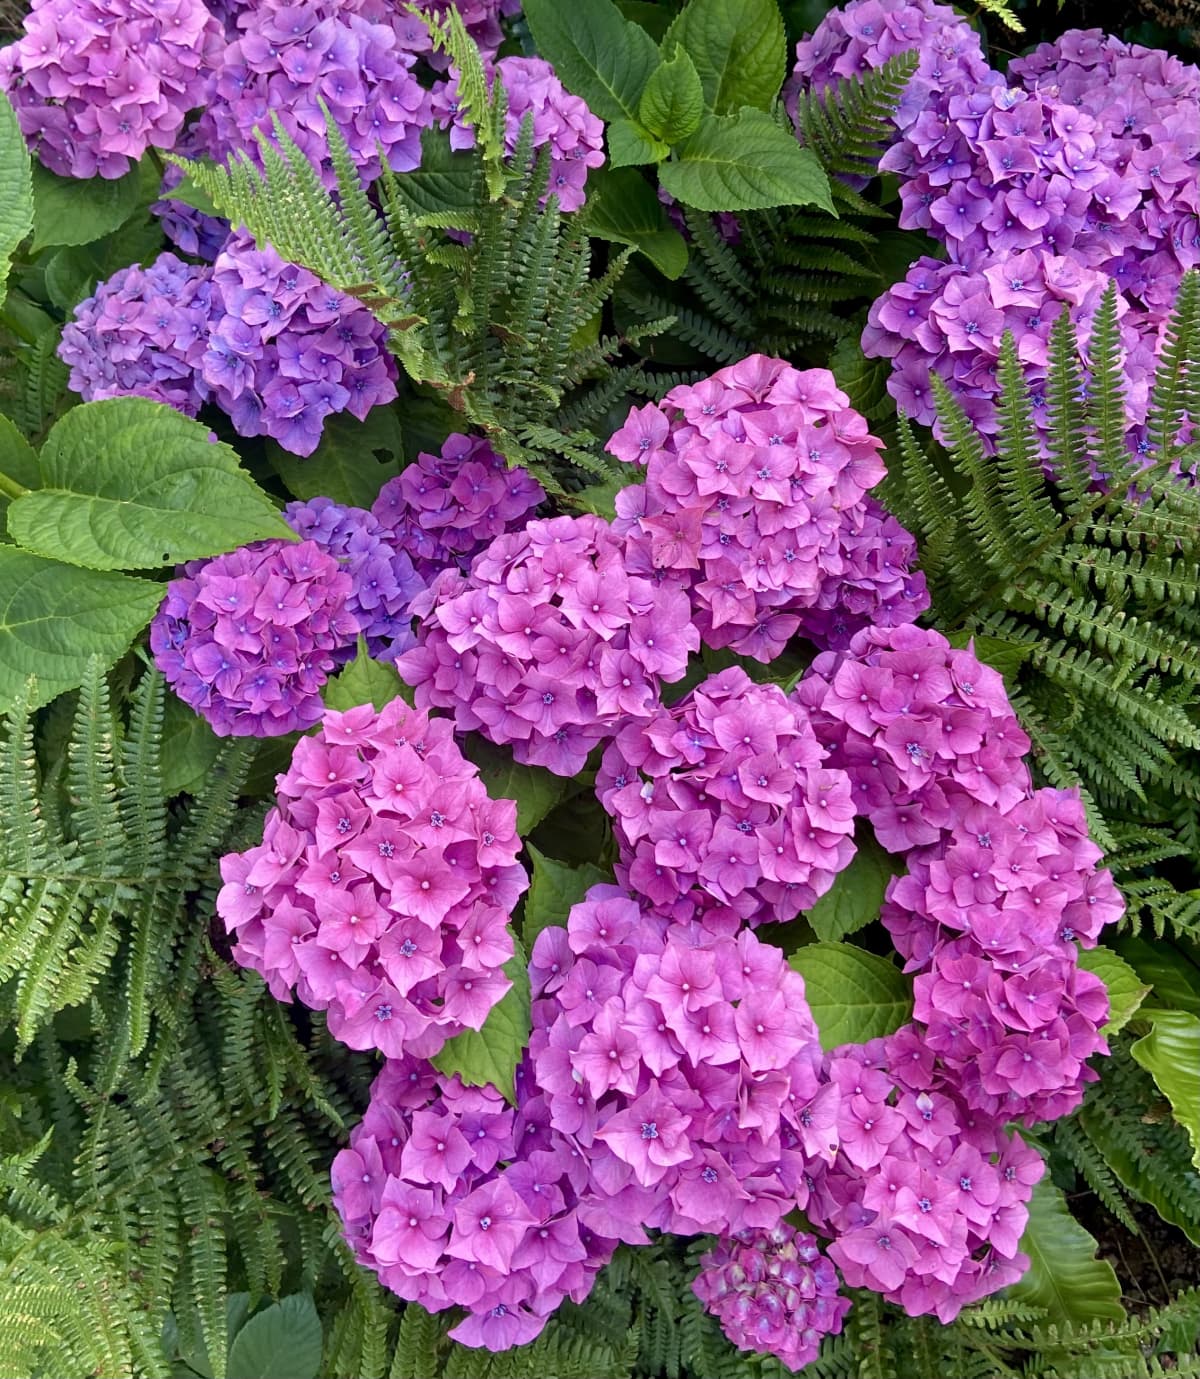 A bunch of purple hydrangeas